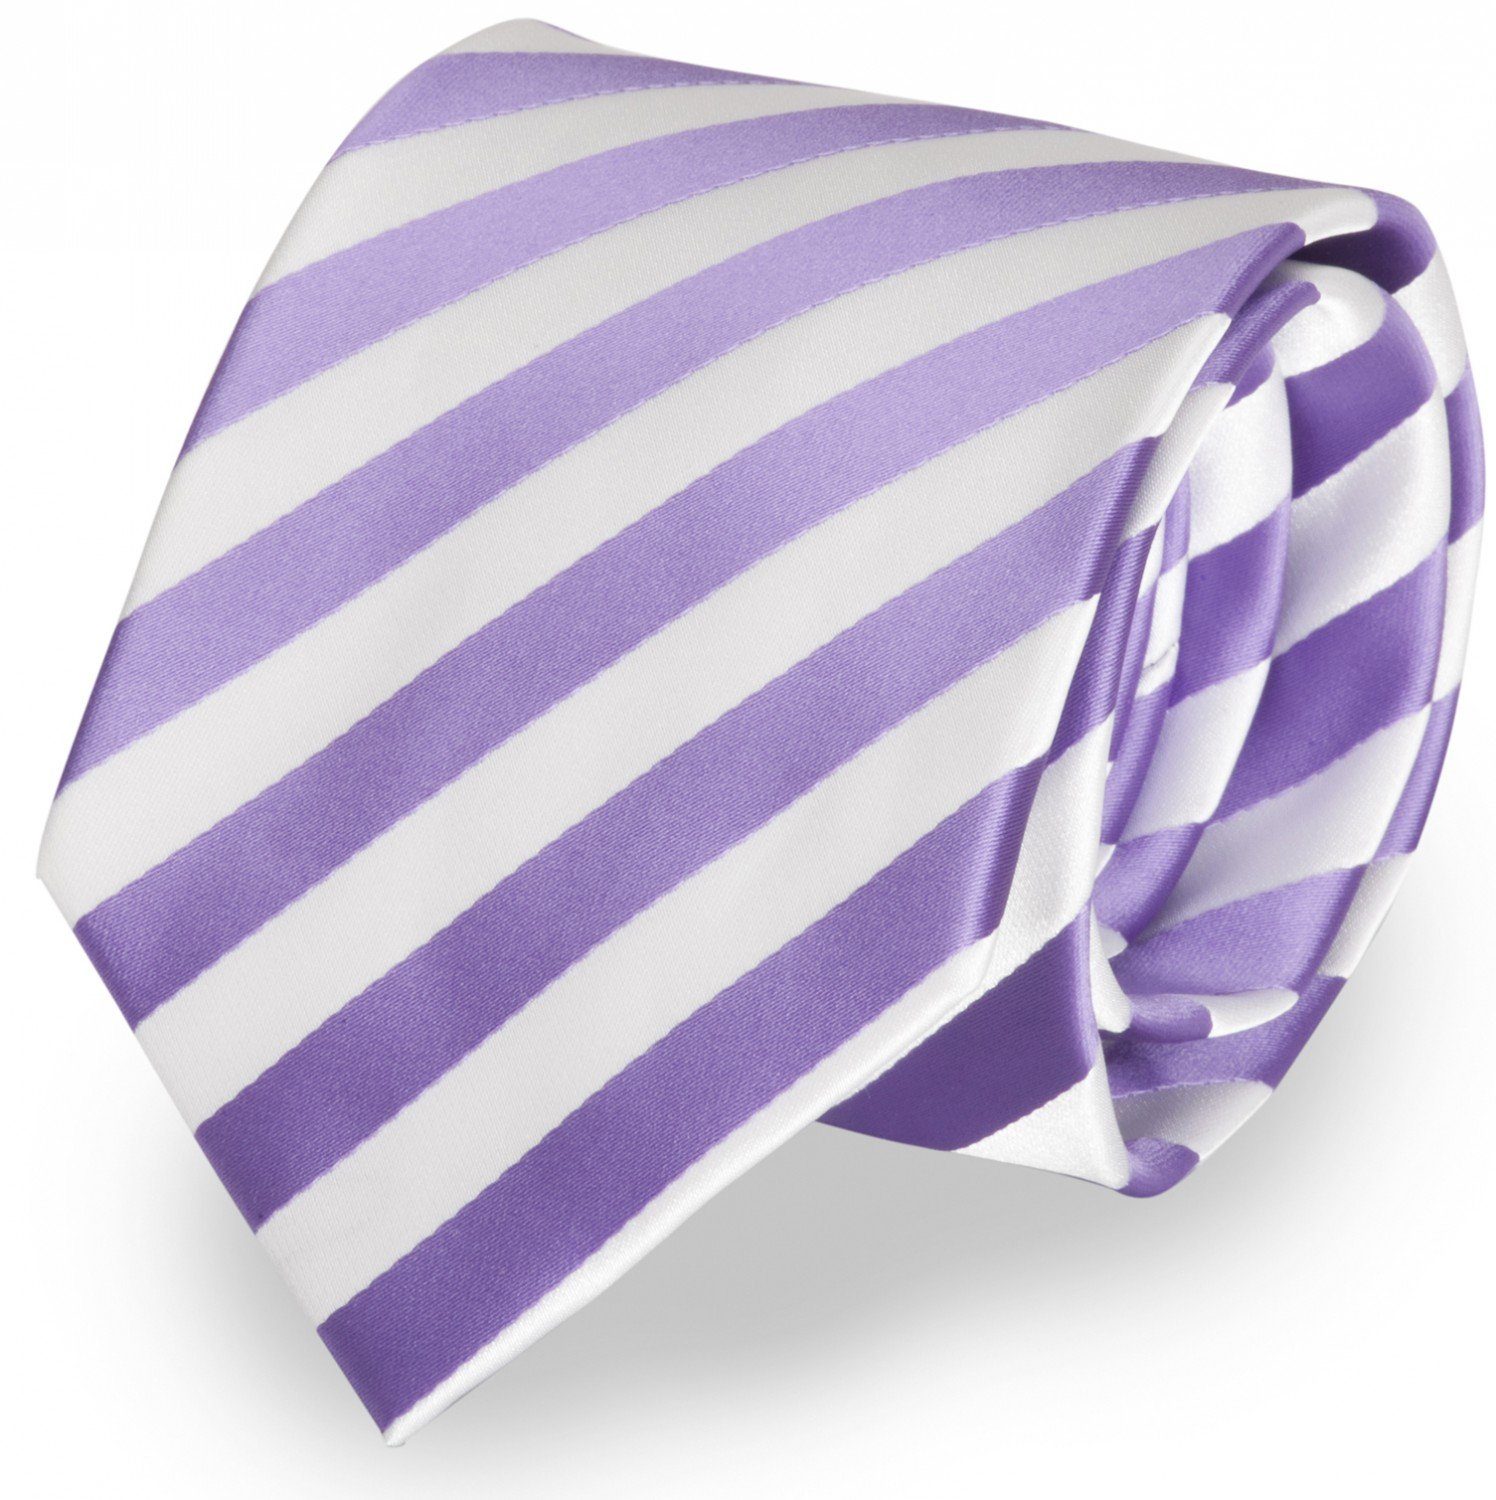 Fabio Farini Krawatte gestreifte Herren Krawatte - Tie mit Streifen in 6cm oder 8cm Breite (ohne Box, Gestreift) Breit (8cm), Violett/Weiß